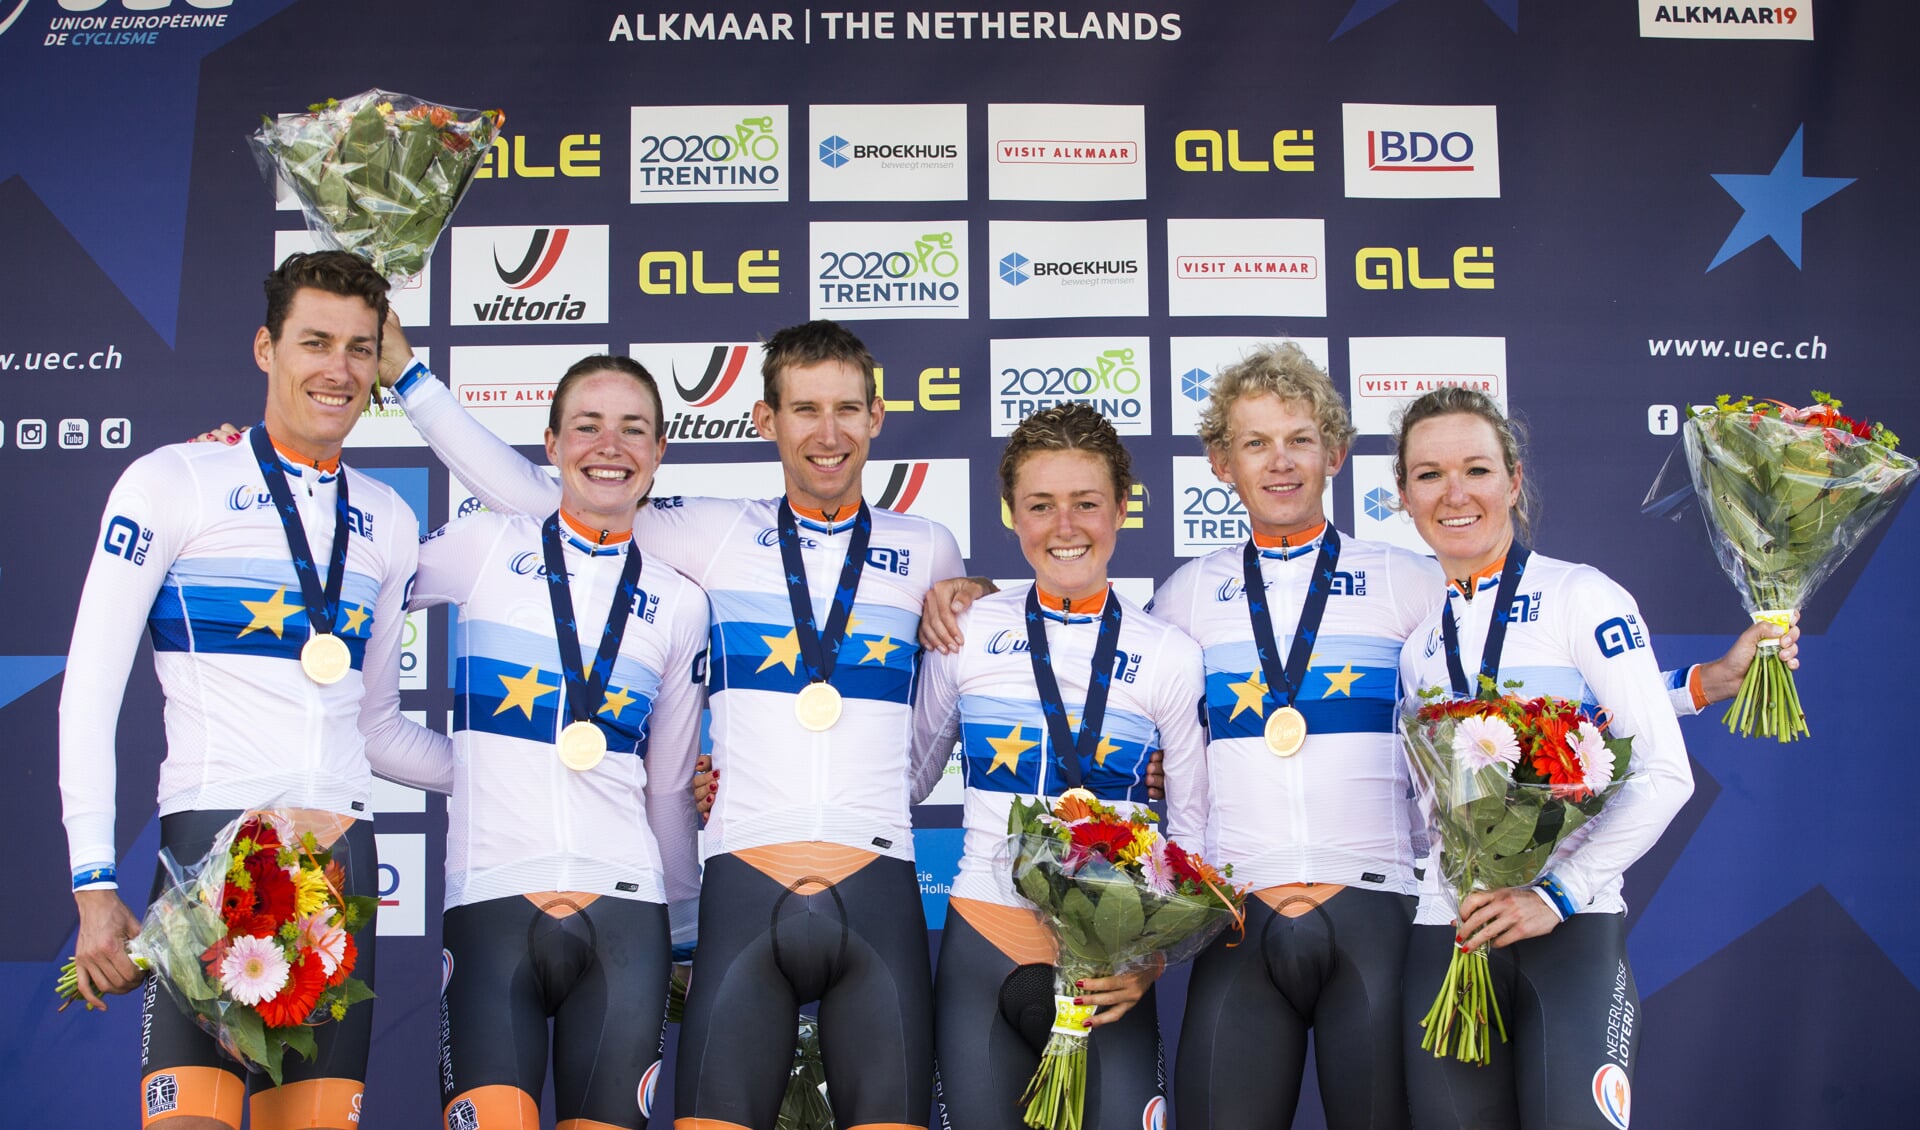 De Nederlandse ploeg met Riejanne Markus tijdens de huldiging na het winnen van de gemengde ploegentijdrit op het EK wielrennen.